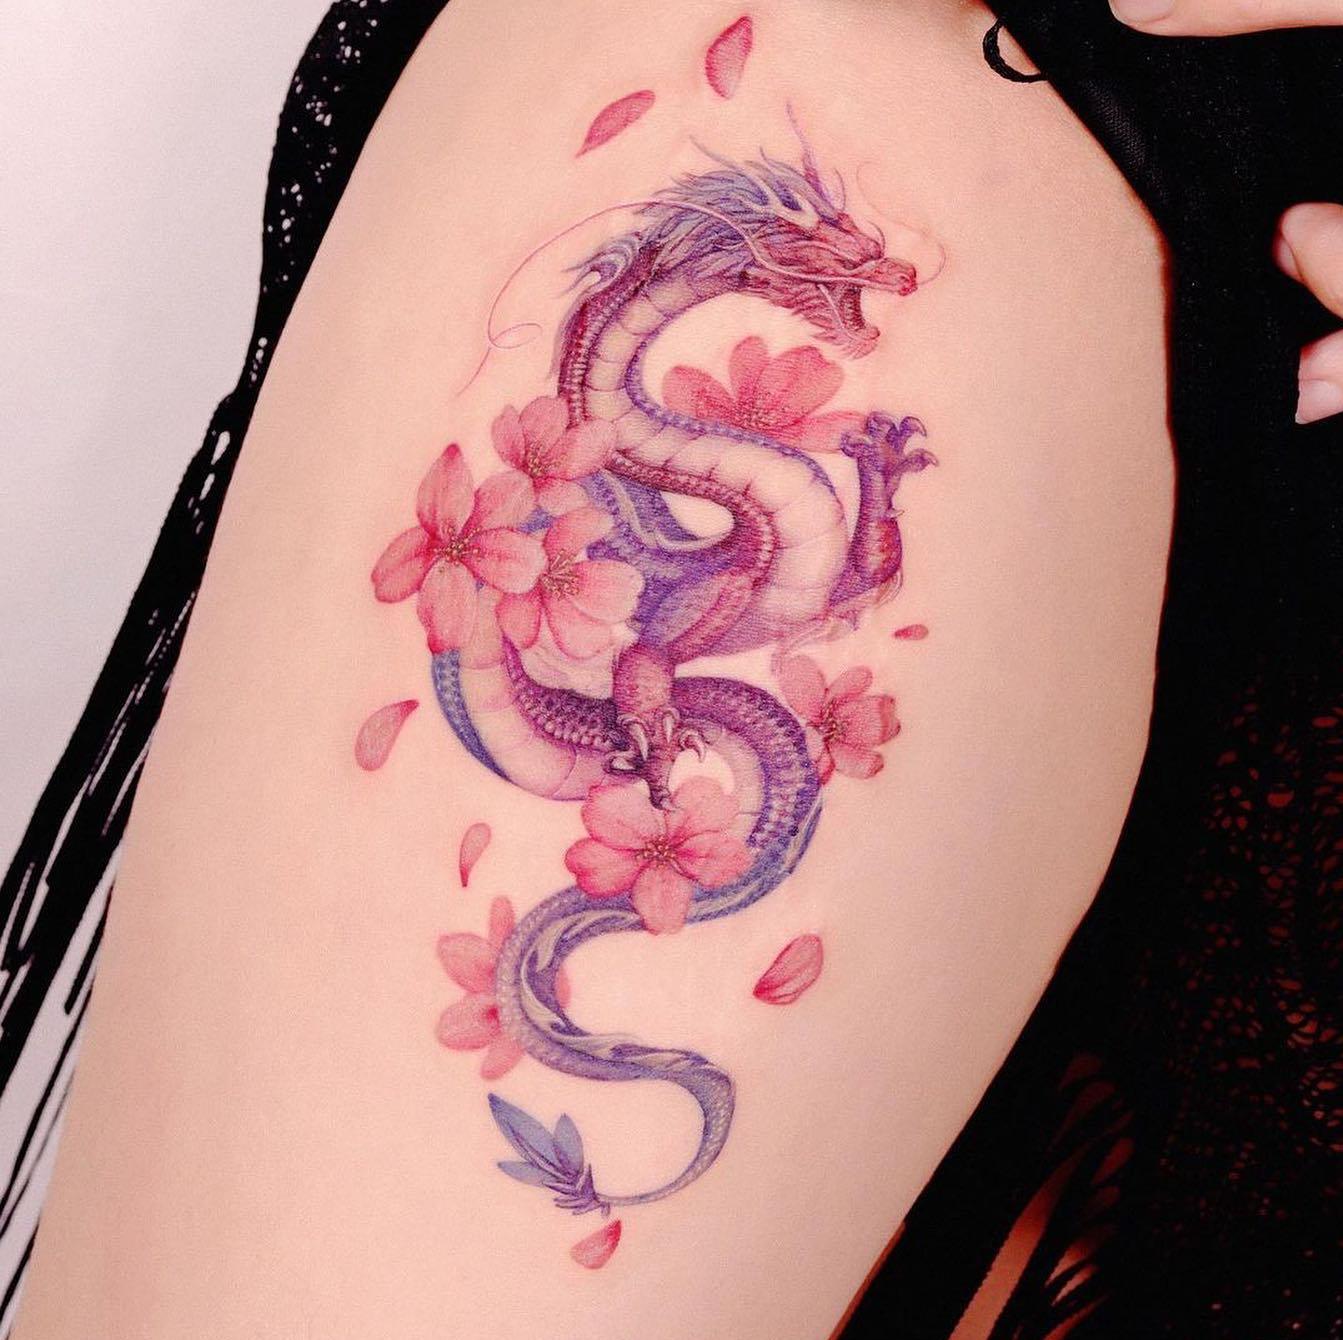 Akwarelowy tatuaż przedstawiający smoka otoczonego kwiatem sakury w kolorze fioletowym i czerwonym